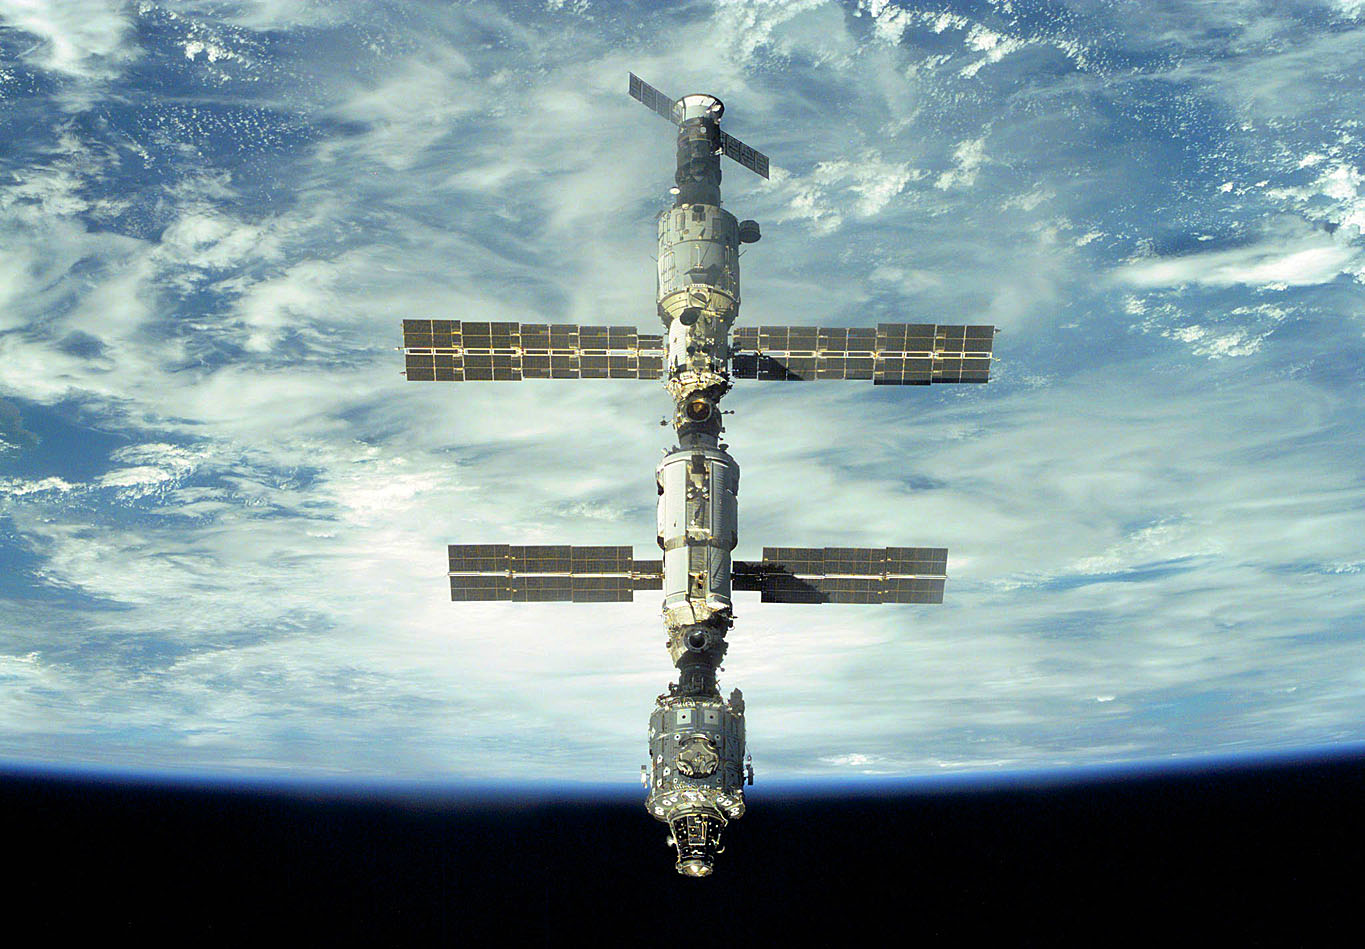 A Nemzetközi Űrállomás, háttérben a Földdel